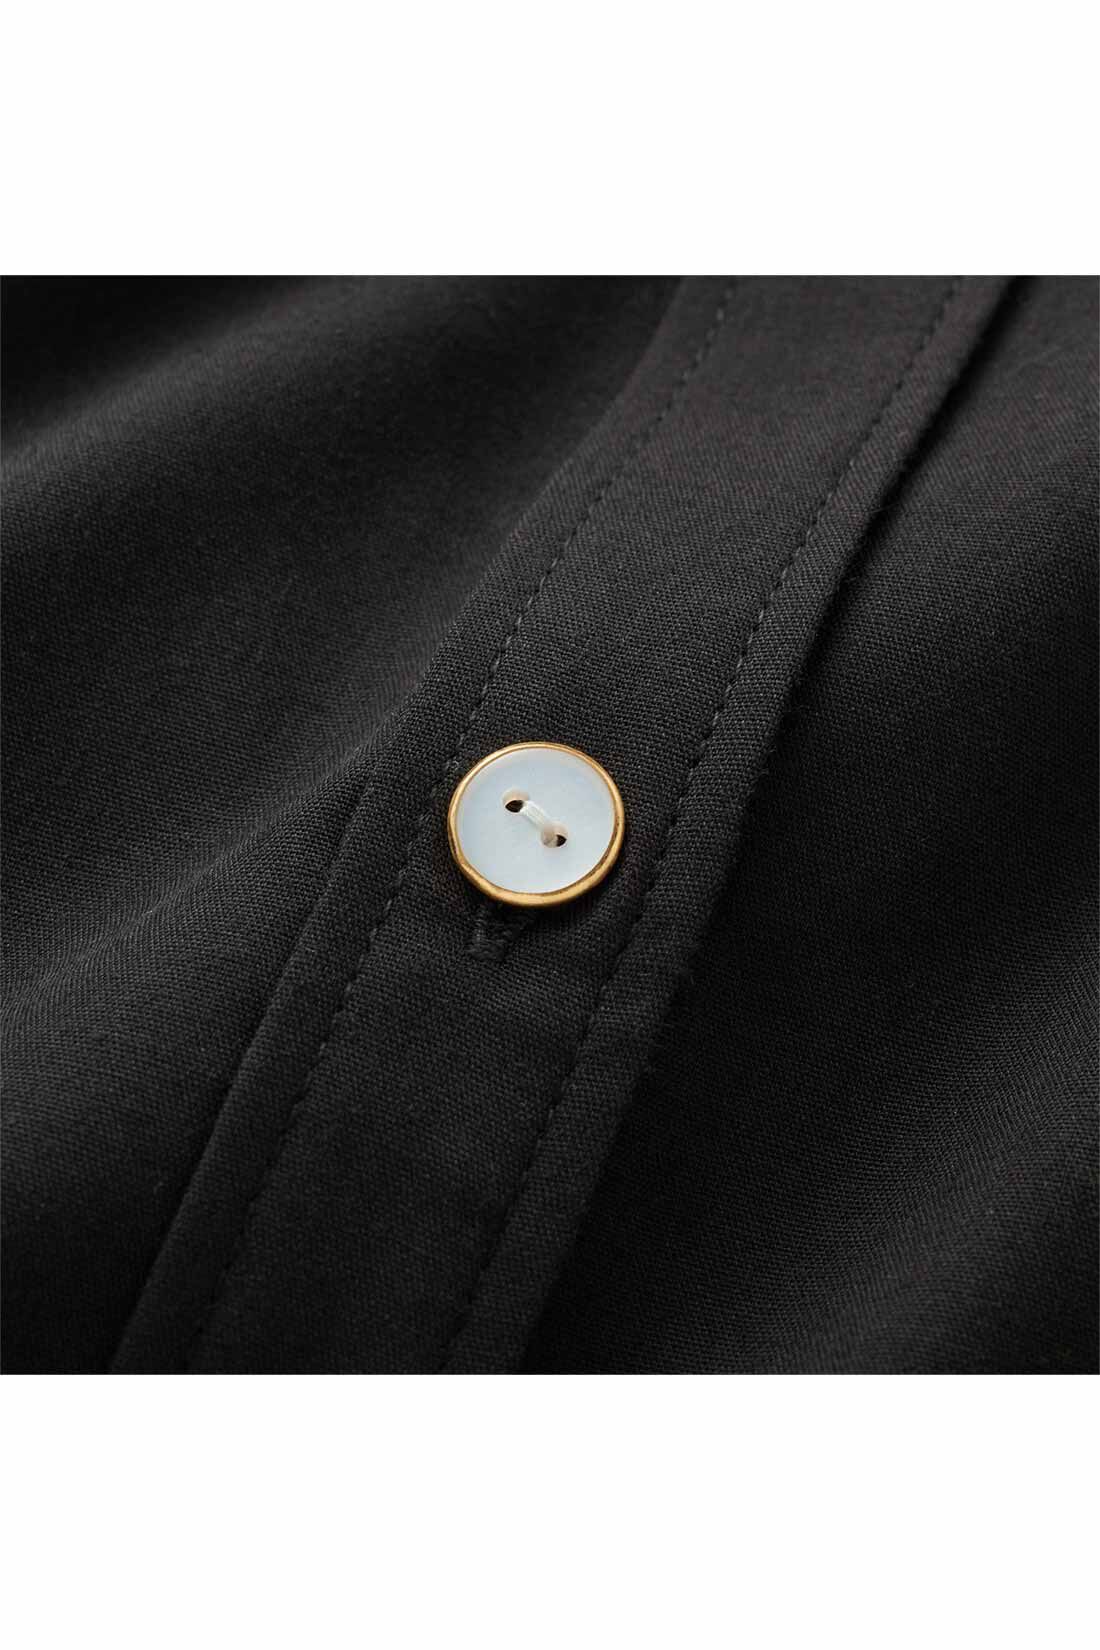 IEDIT|IEDIT[イディット]　抗菌防臭がうれしい たっぷりフレアーがきれいな着映えシャツブラウス〈ブラック〉|しわになりにくいポリエステル混。飾りボタンがアクセントに。